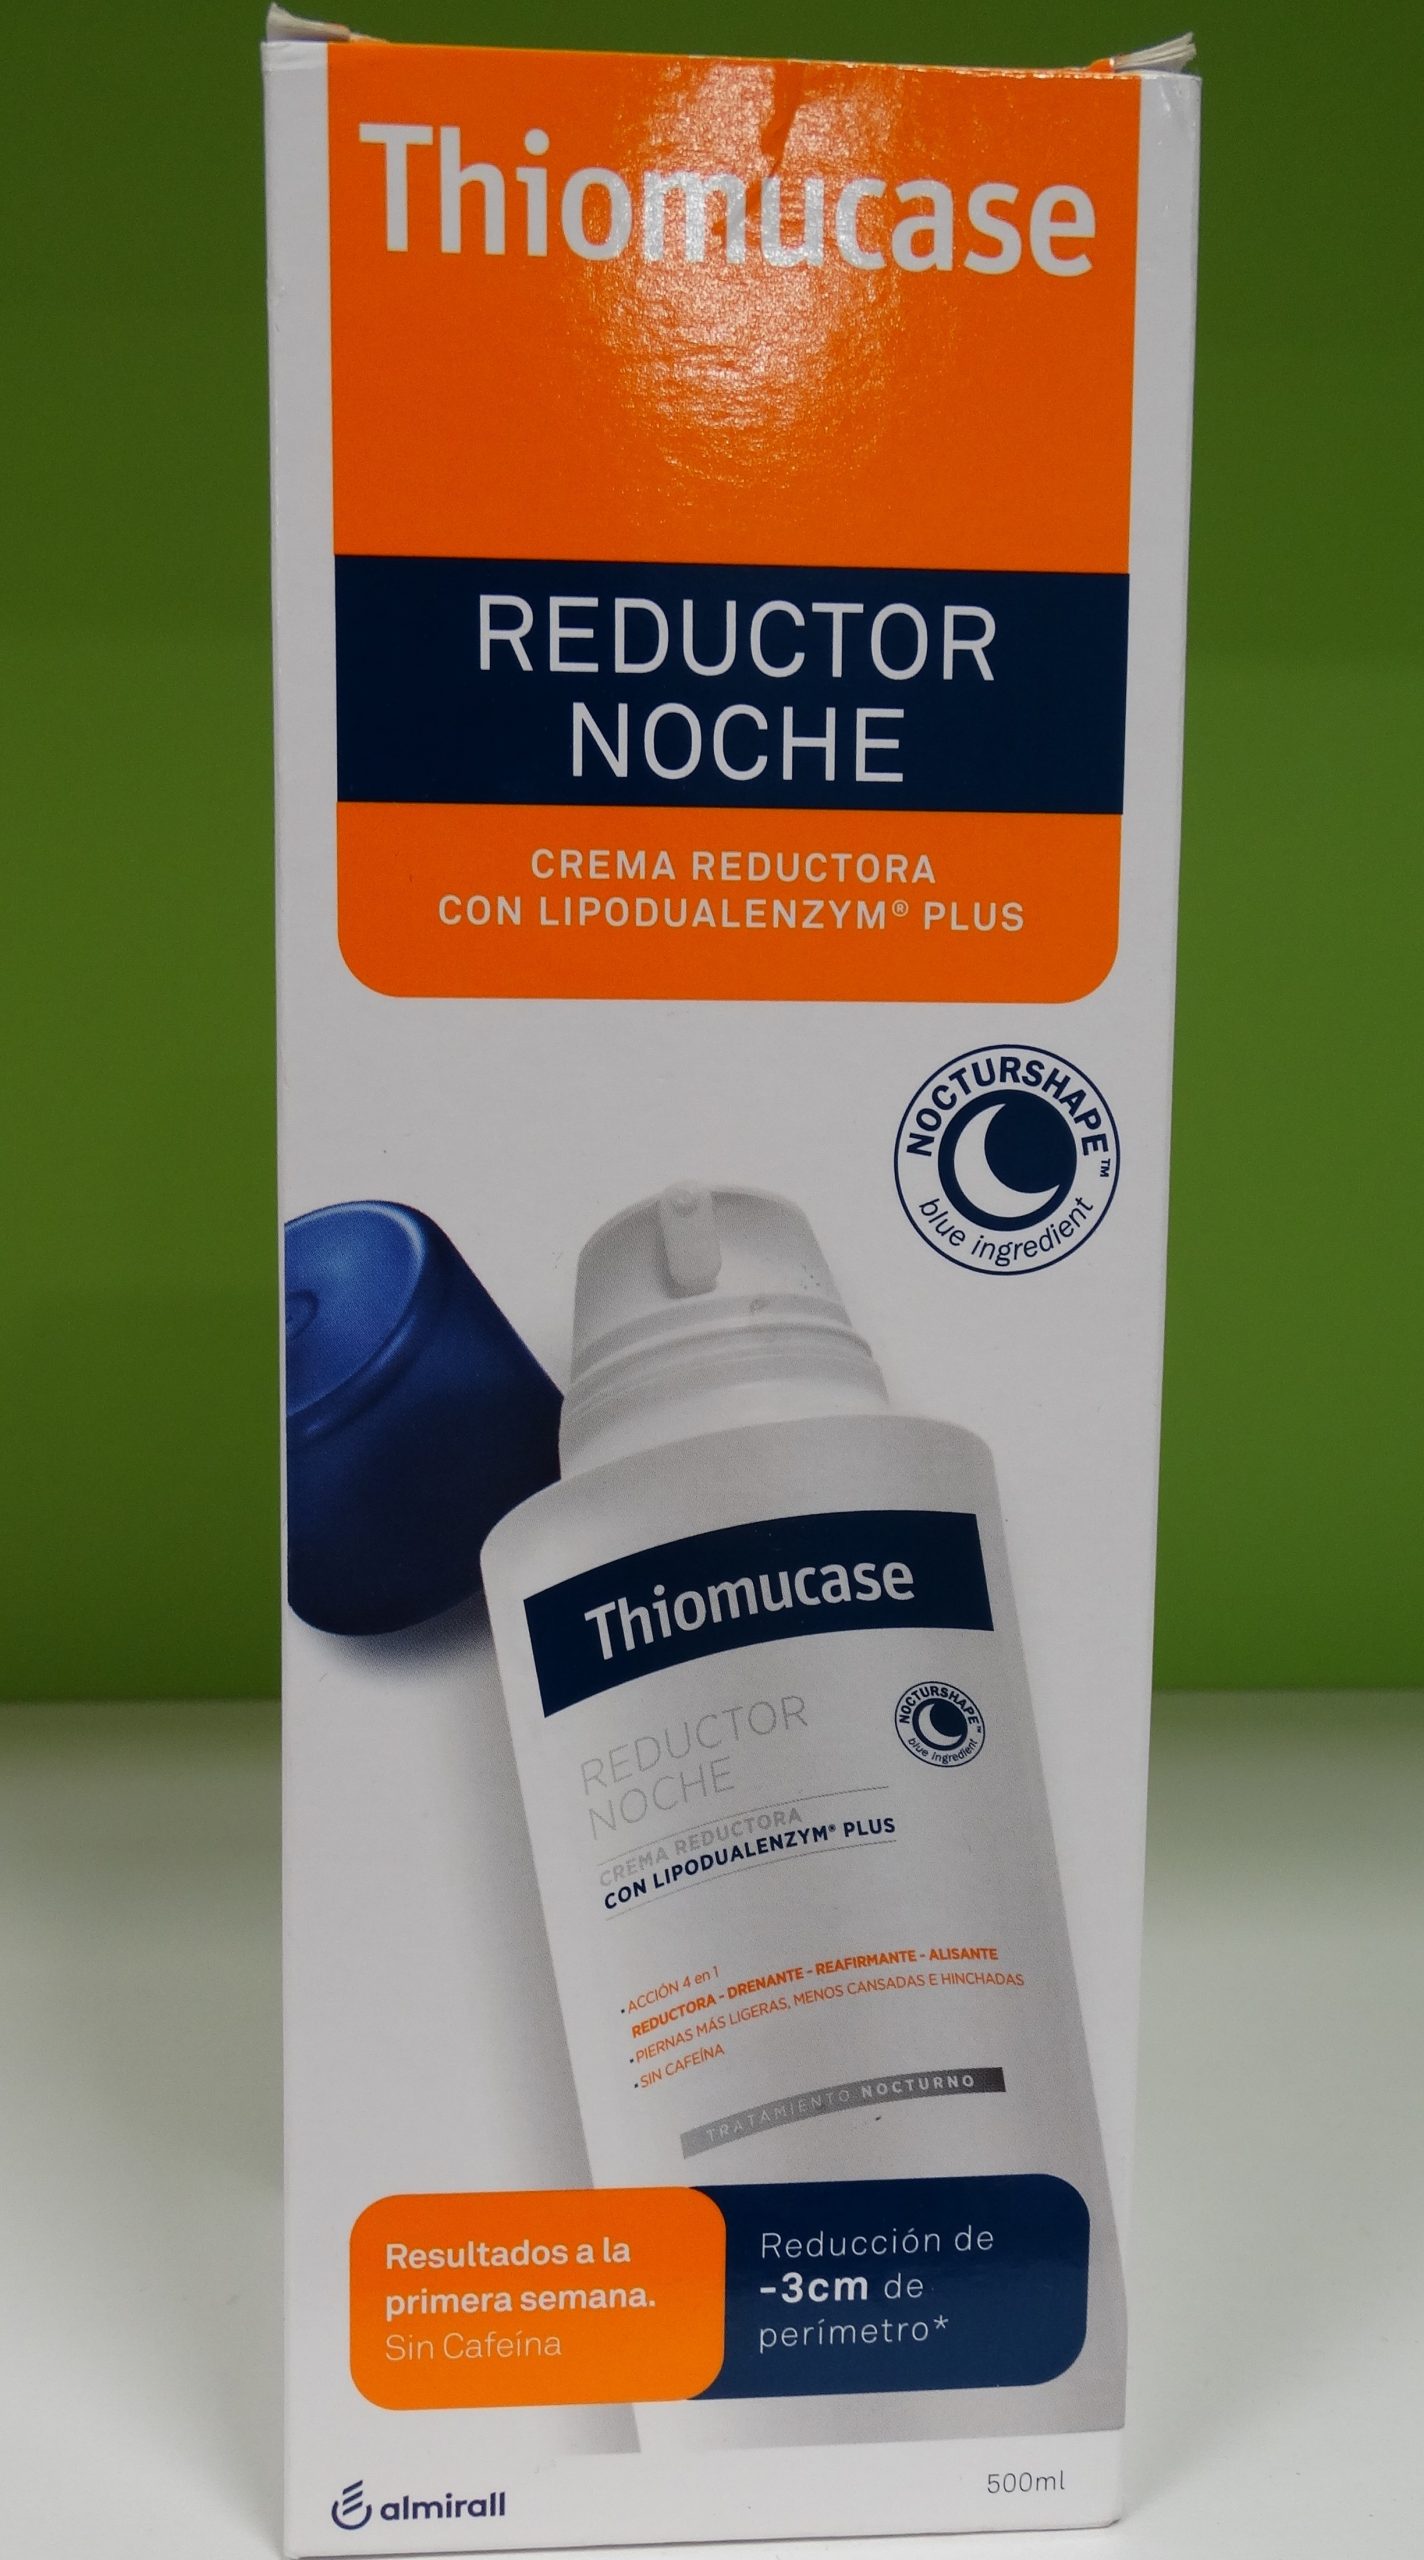 Reductor noche Los productos Thiomucase permiten eliminar cualquier tipo de celulitis en corto plazo y prevenir su aparición